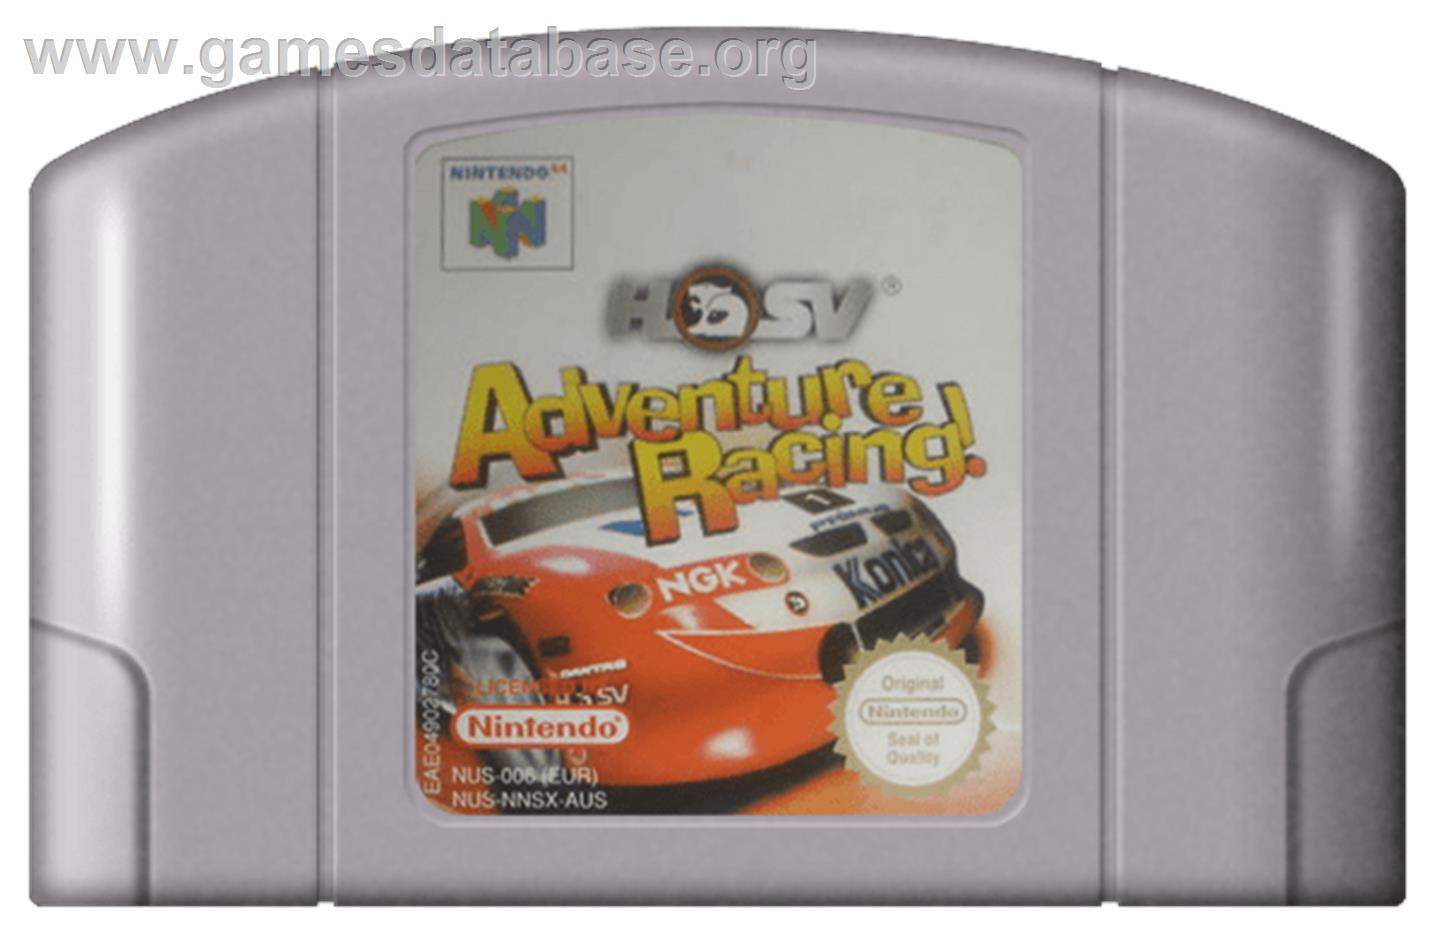 HSV Adventure Racing - Nintendo N64 - Artwork - Cartridge